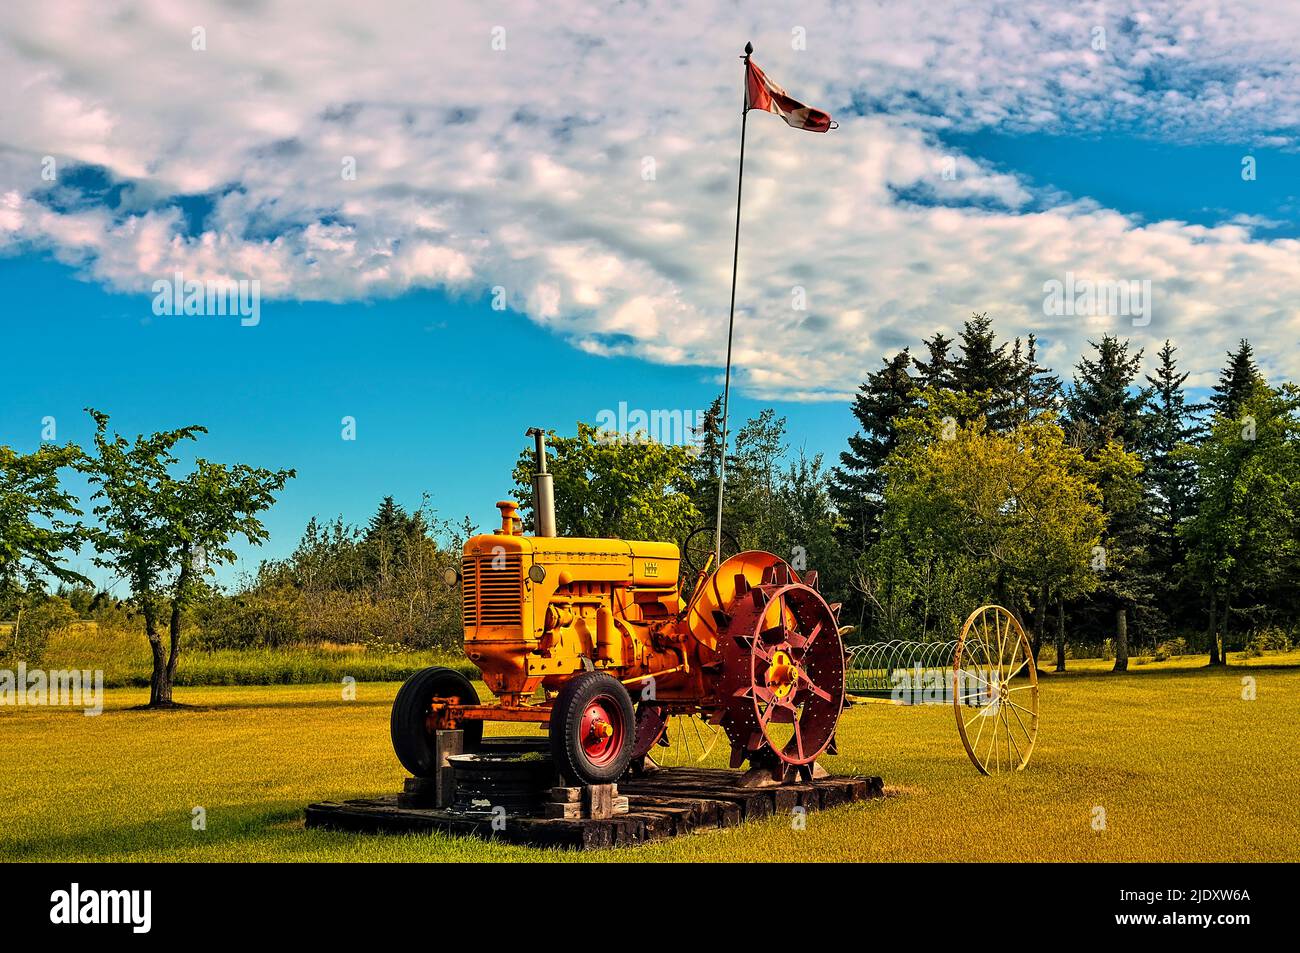 Un antiguo tractor de granja Minneapolis Moline retirado se sienta como una decoración en un césped de los agricultores Foto de stock